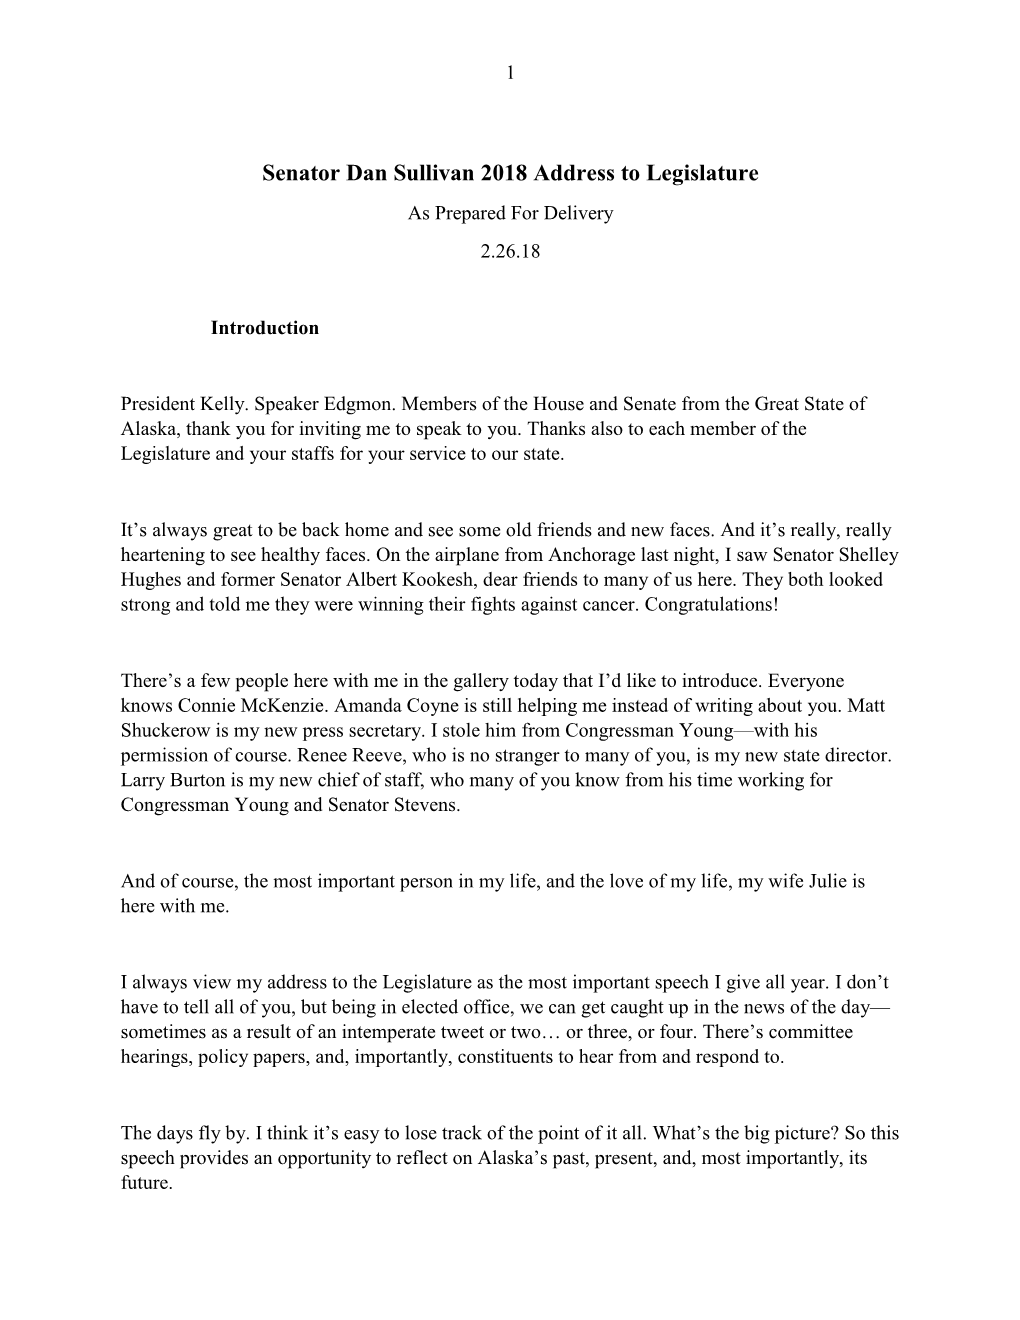 Senator Dan Sullivan 2018 Address to Legislature As Prepared for Delivery 2.26.18